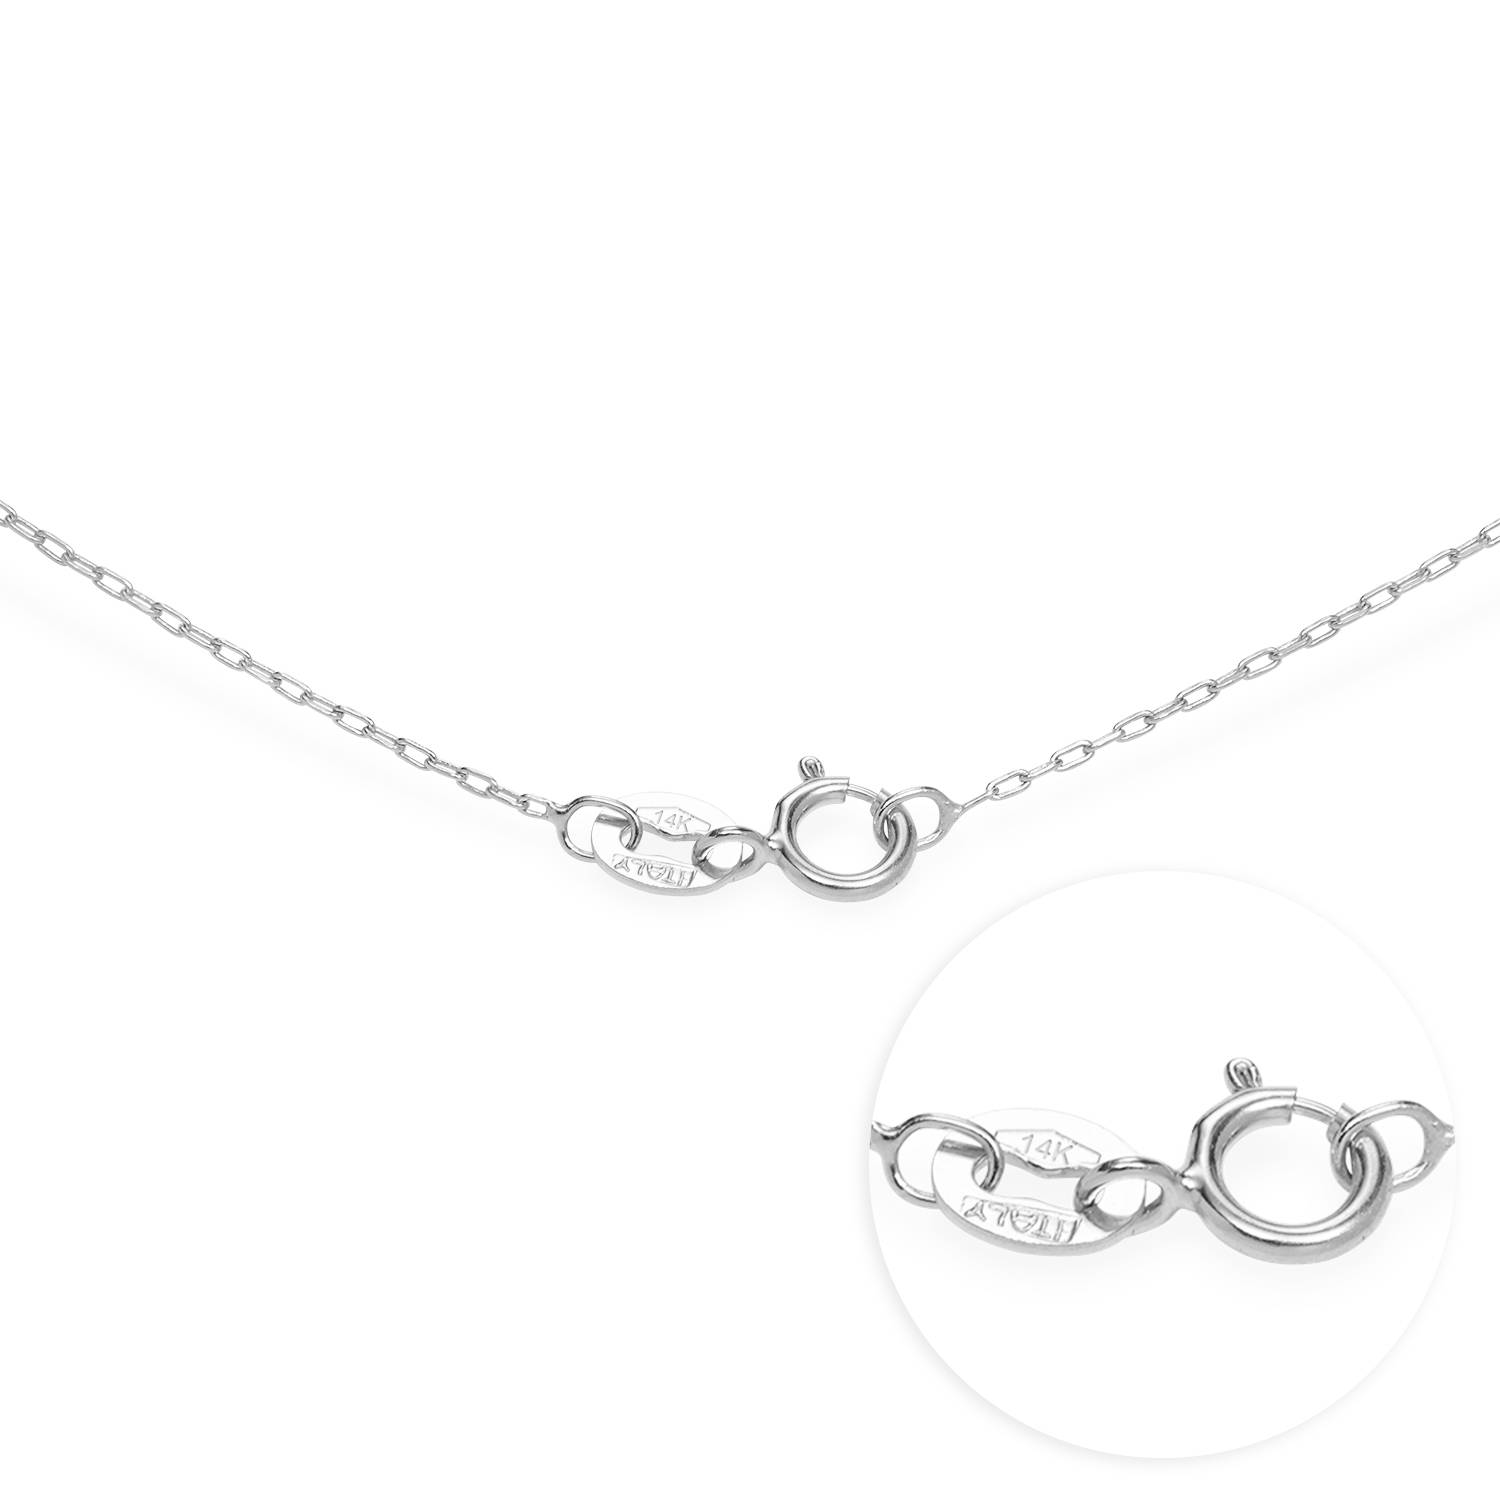 Herzförmige Halskette mit zwei Namen - 585er Weißgold-1 Produktfoto